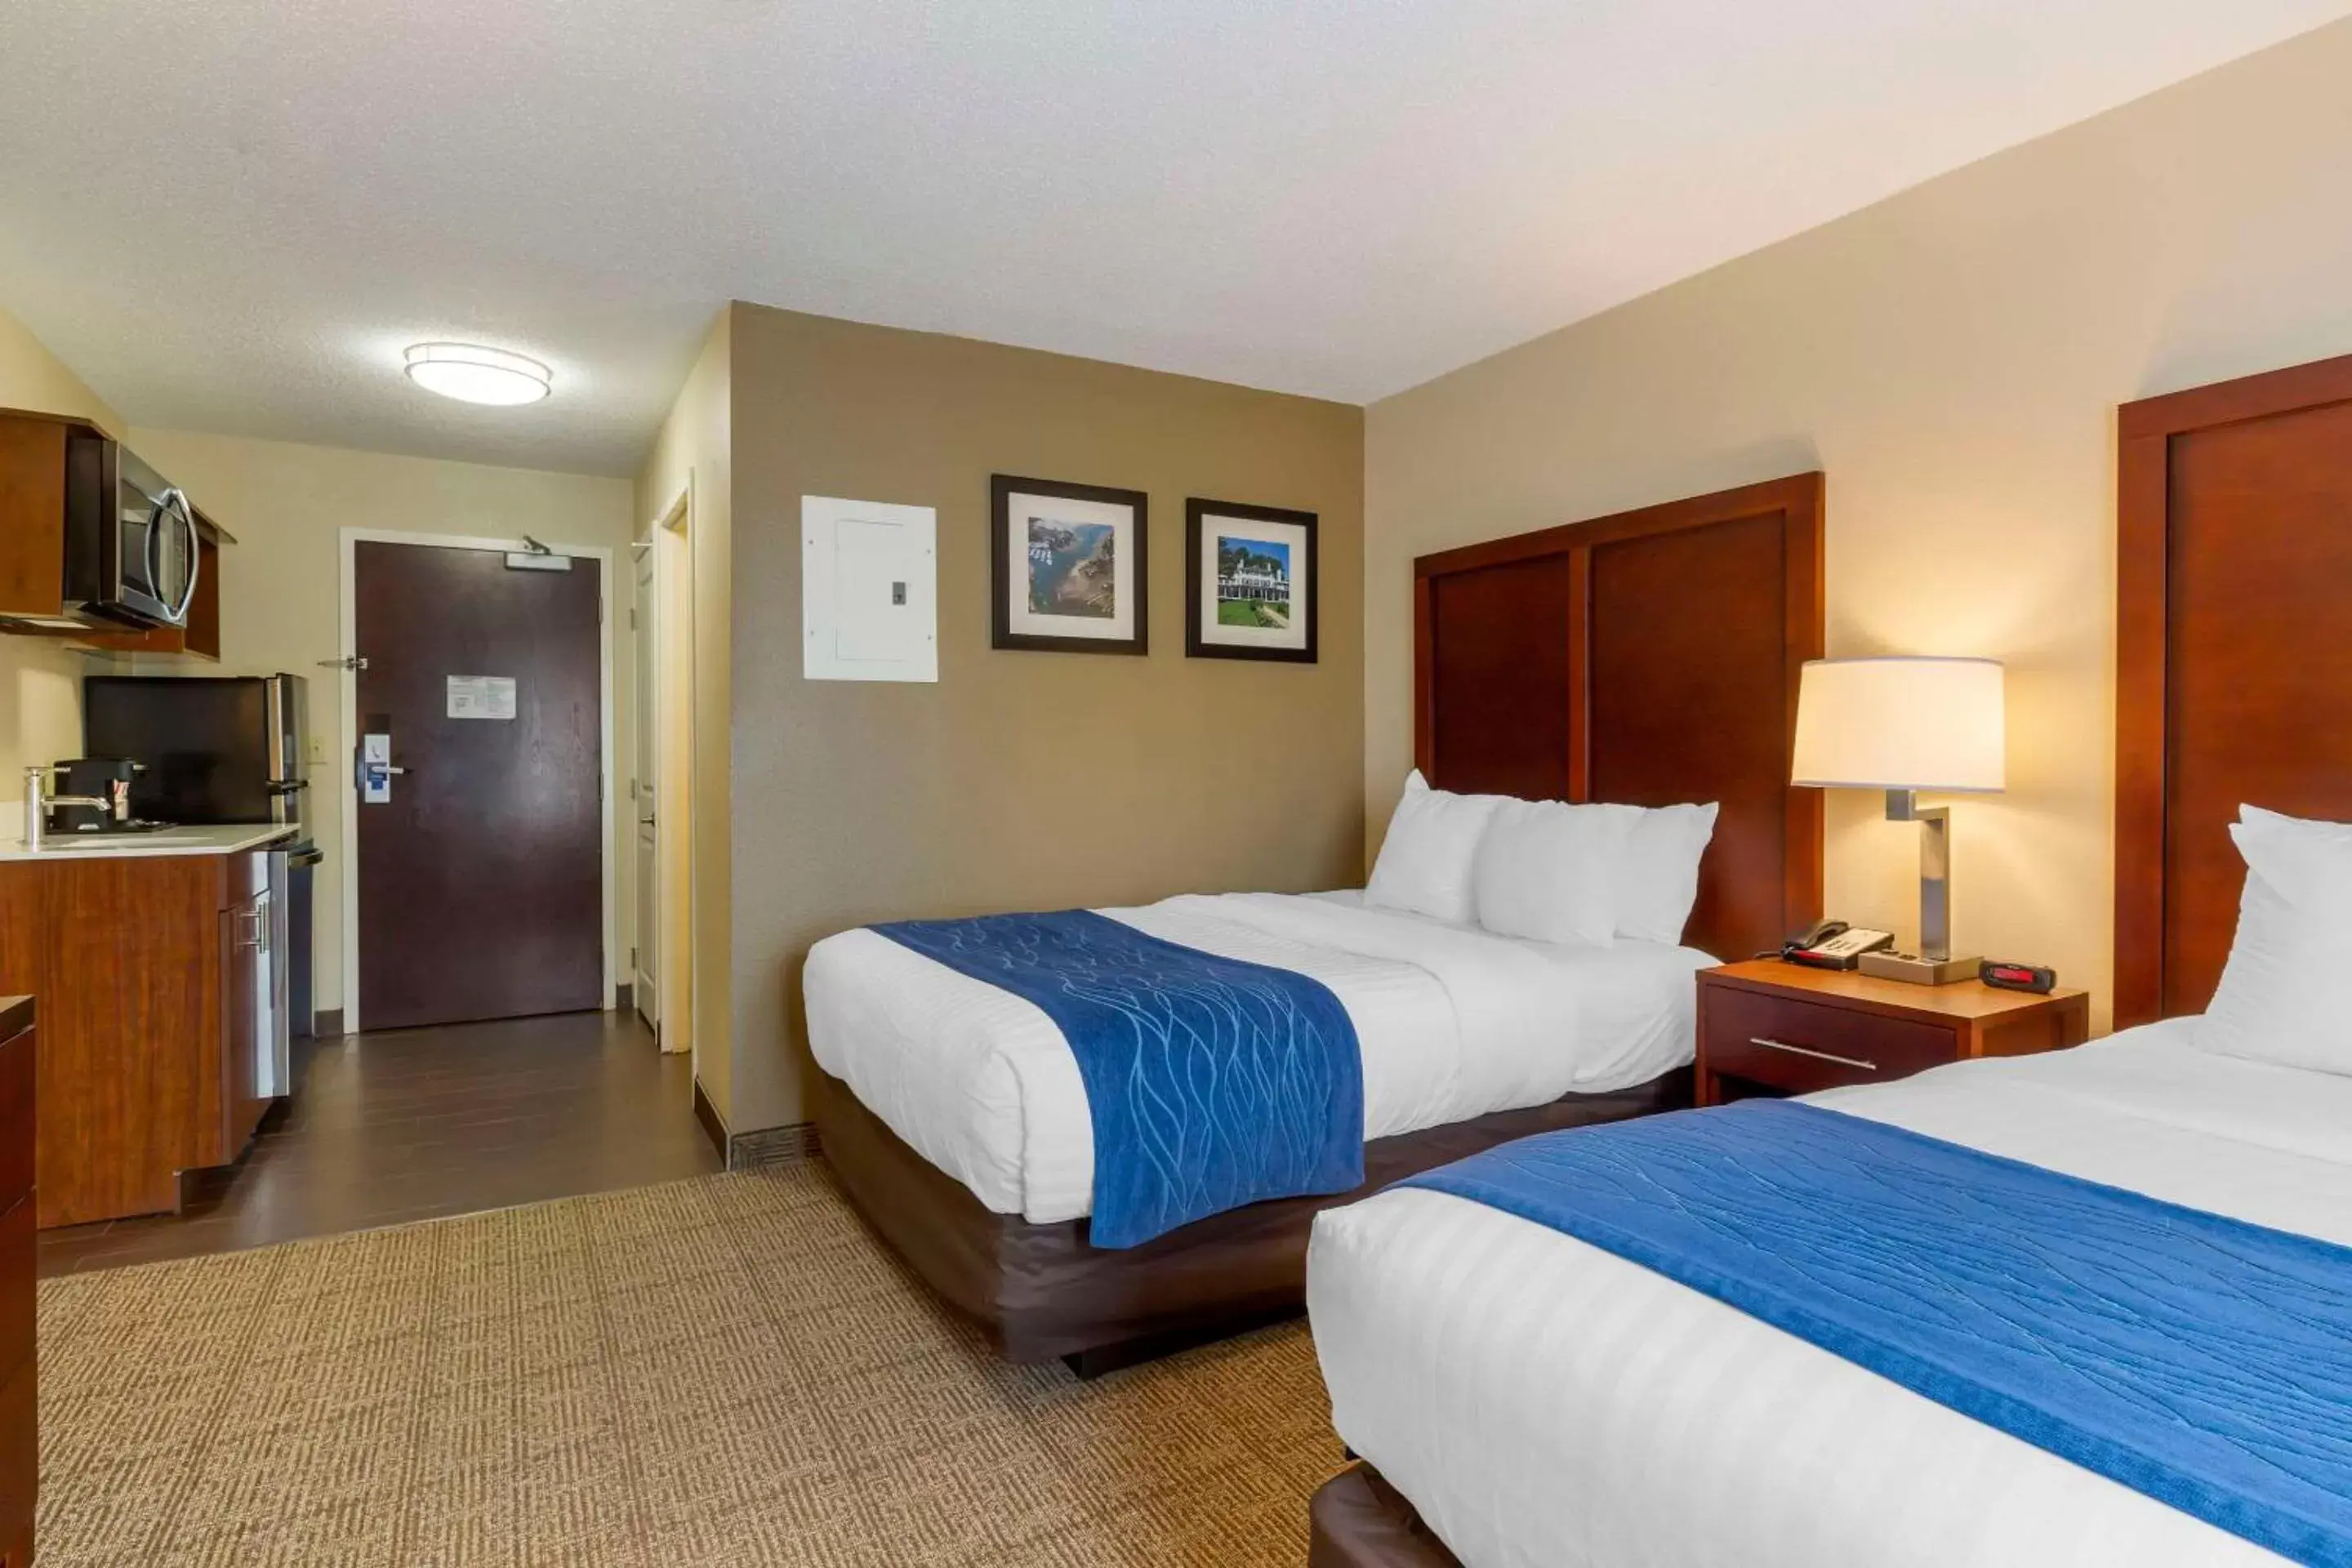 Bedroom, Bed in Comfort Inn Danvers - Boston North Shore